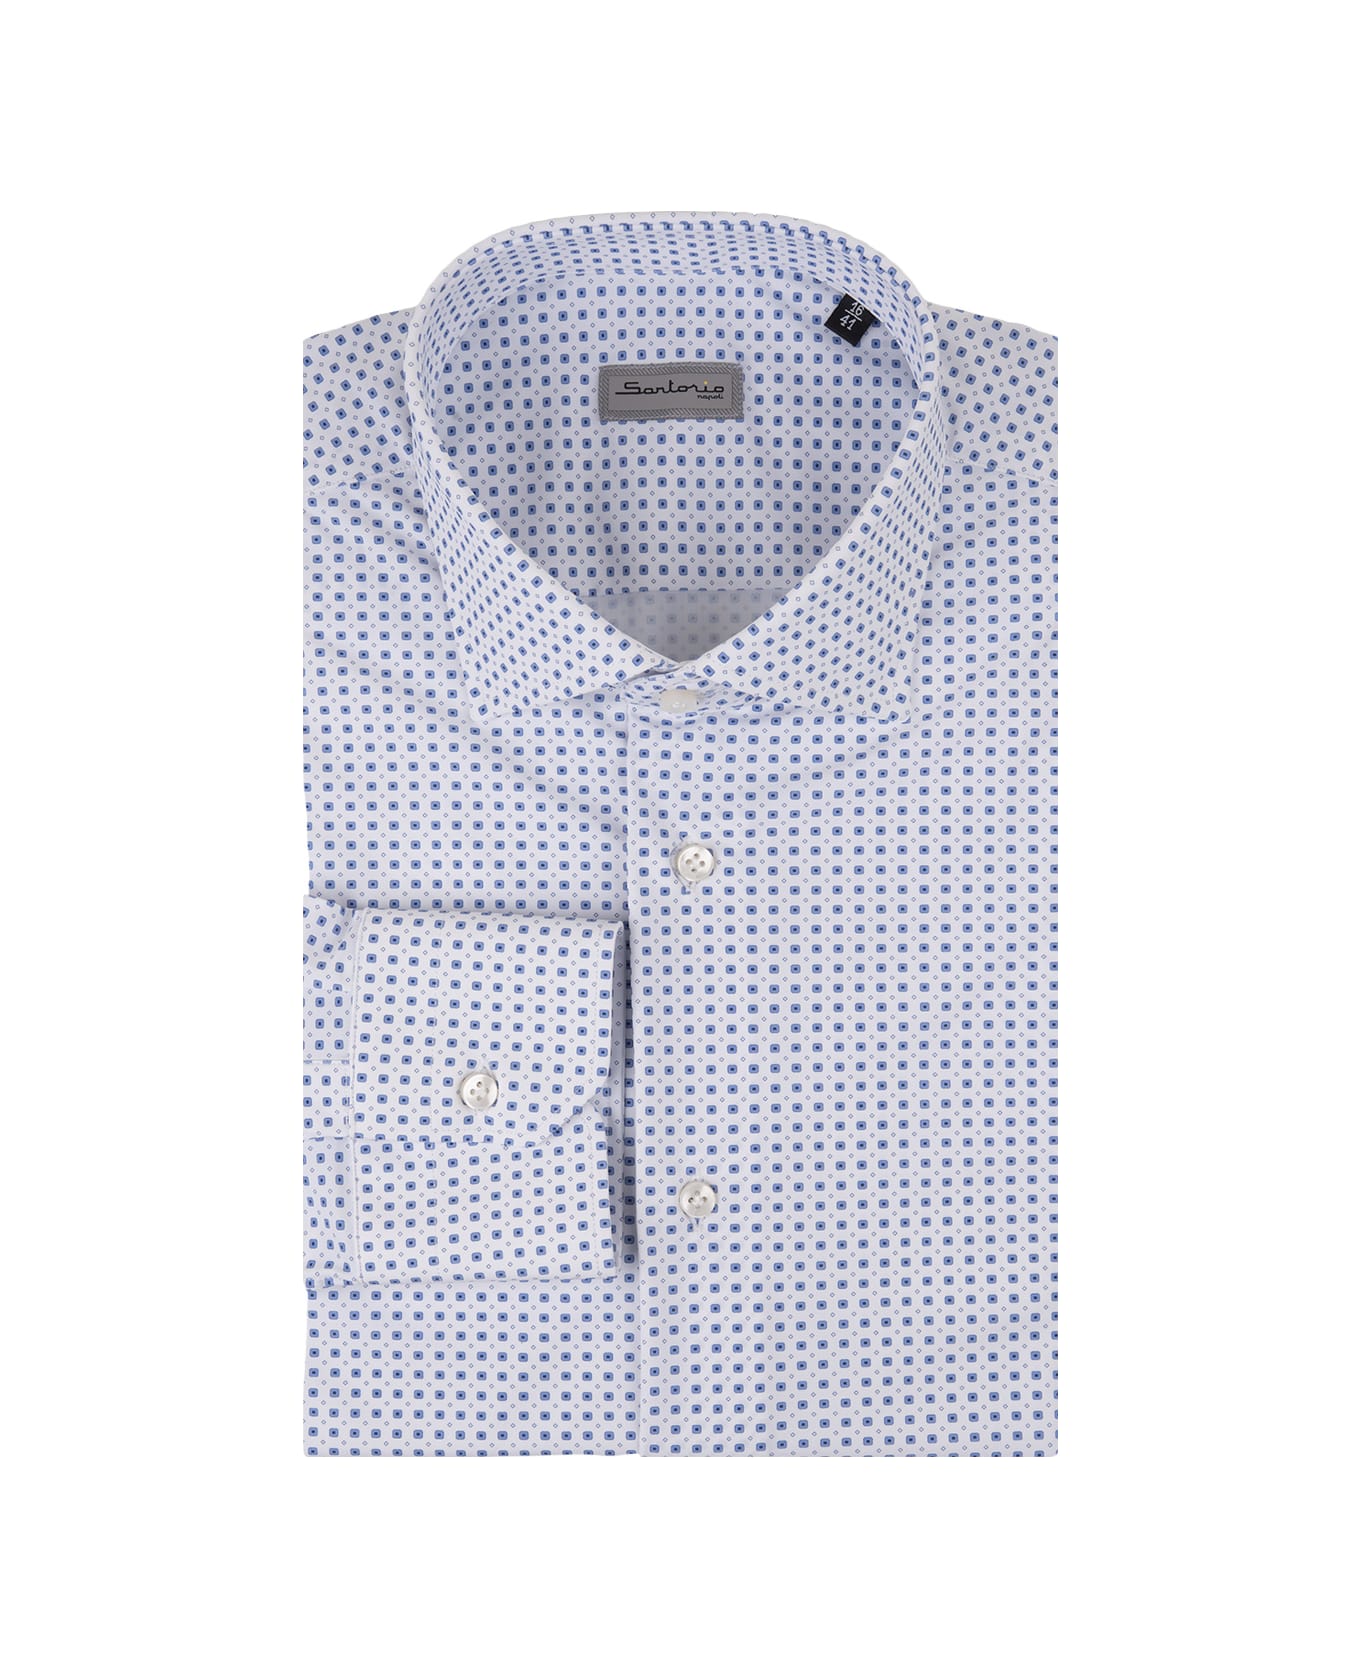 Sartorio Napoli White Shirt With Blue Micro Pattern - White